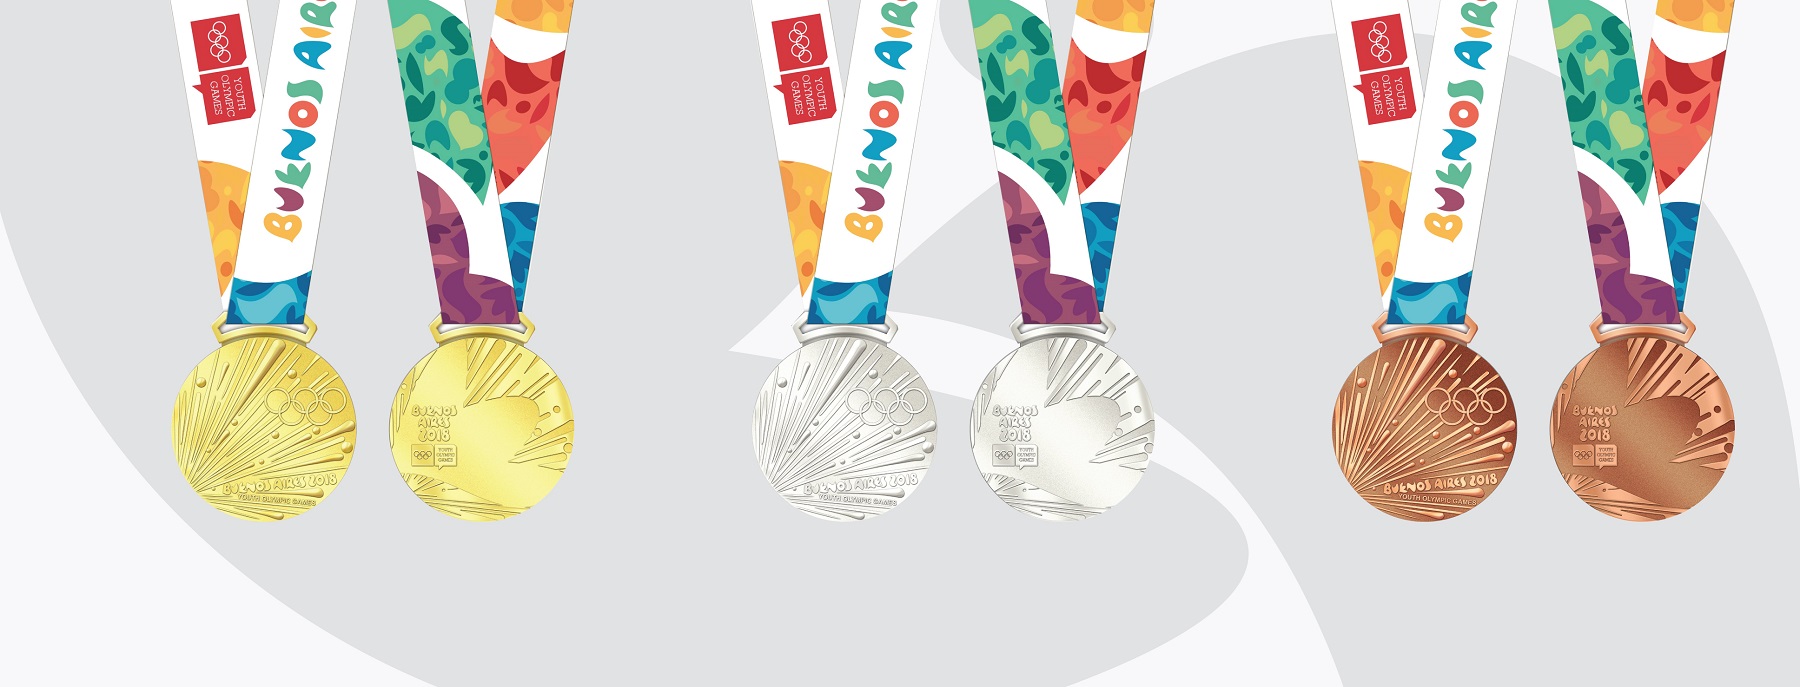 توزیع هزاران مدال در مسابقات بوینس آیرس 2018